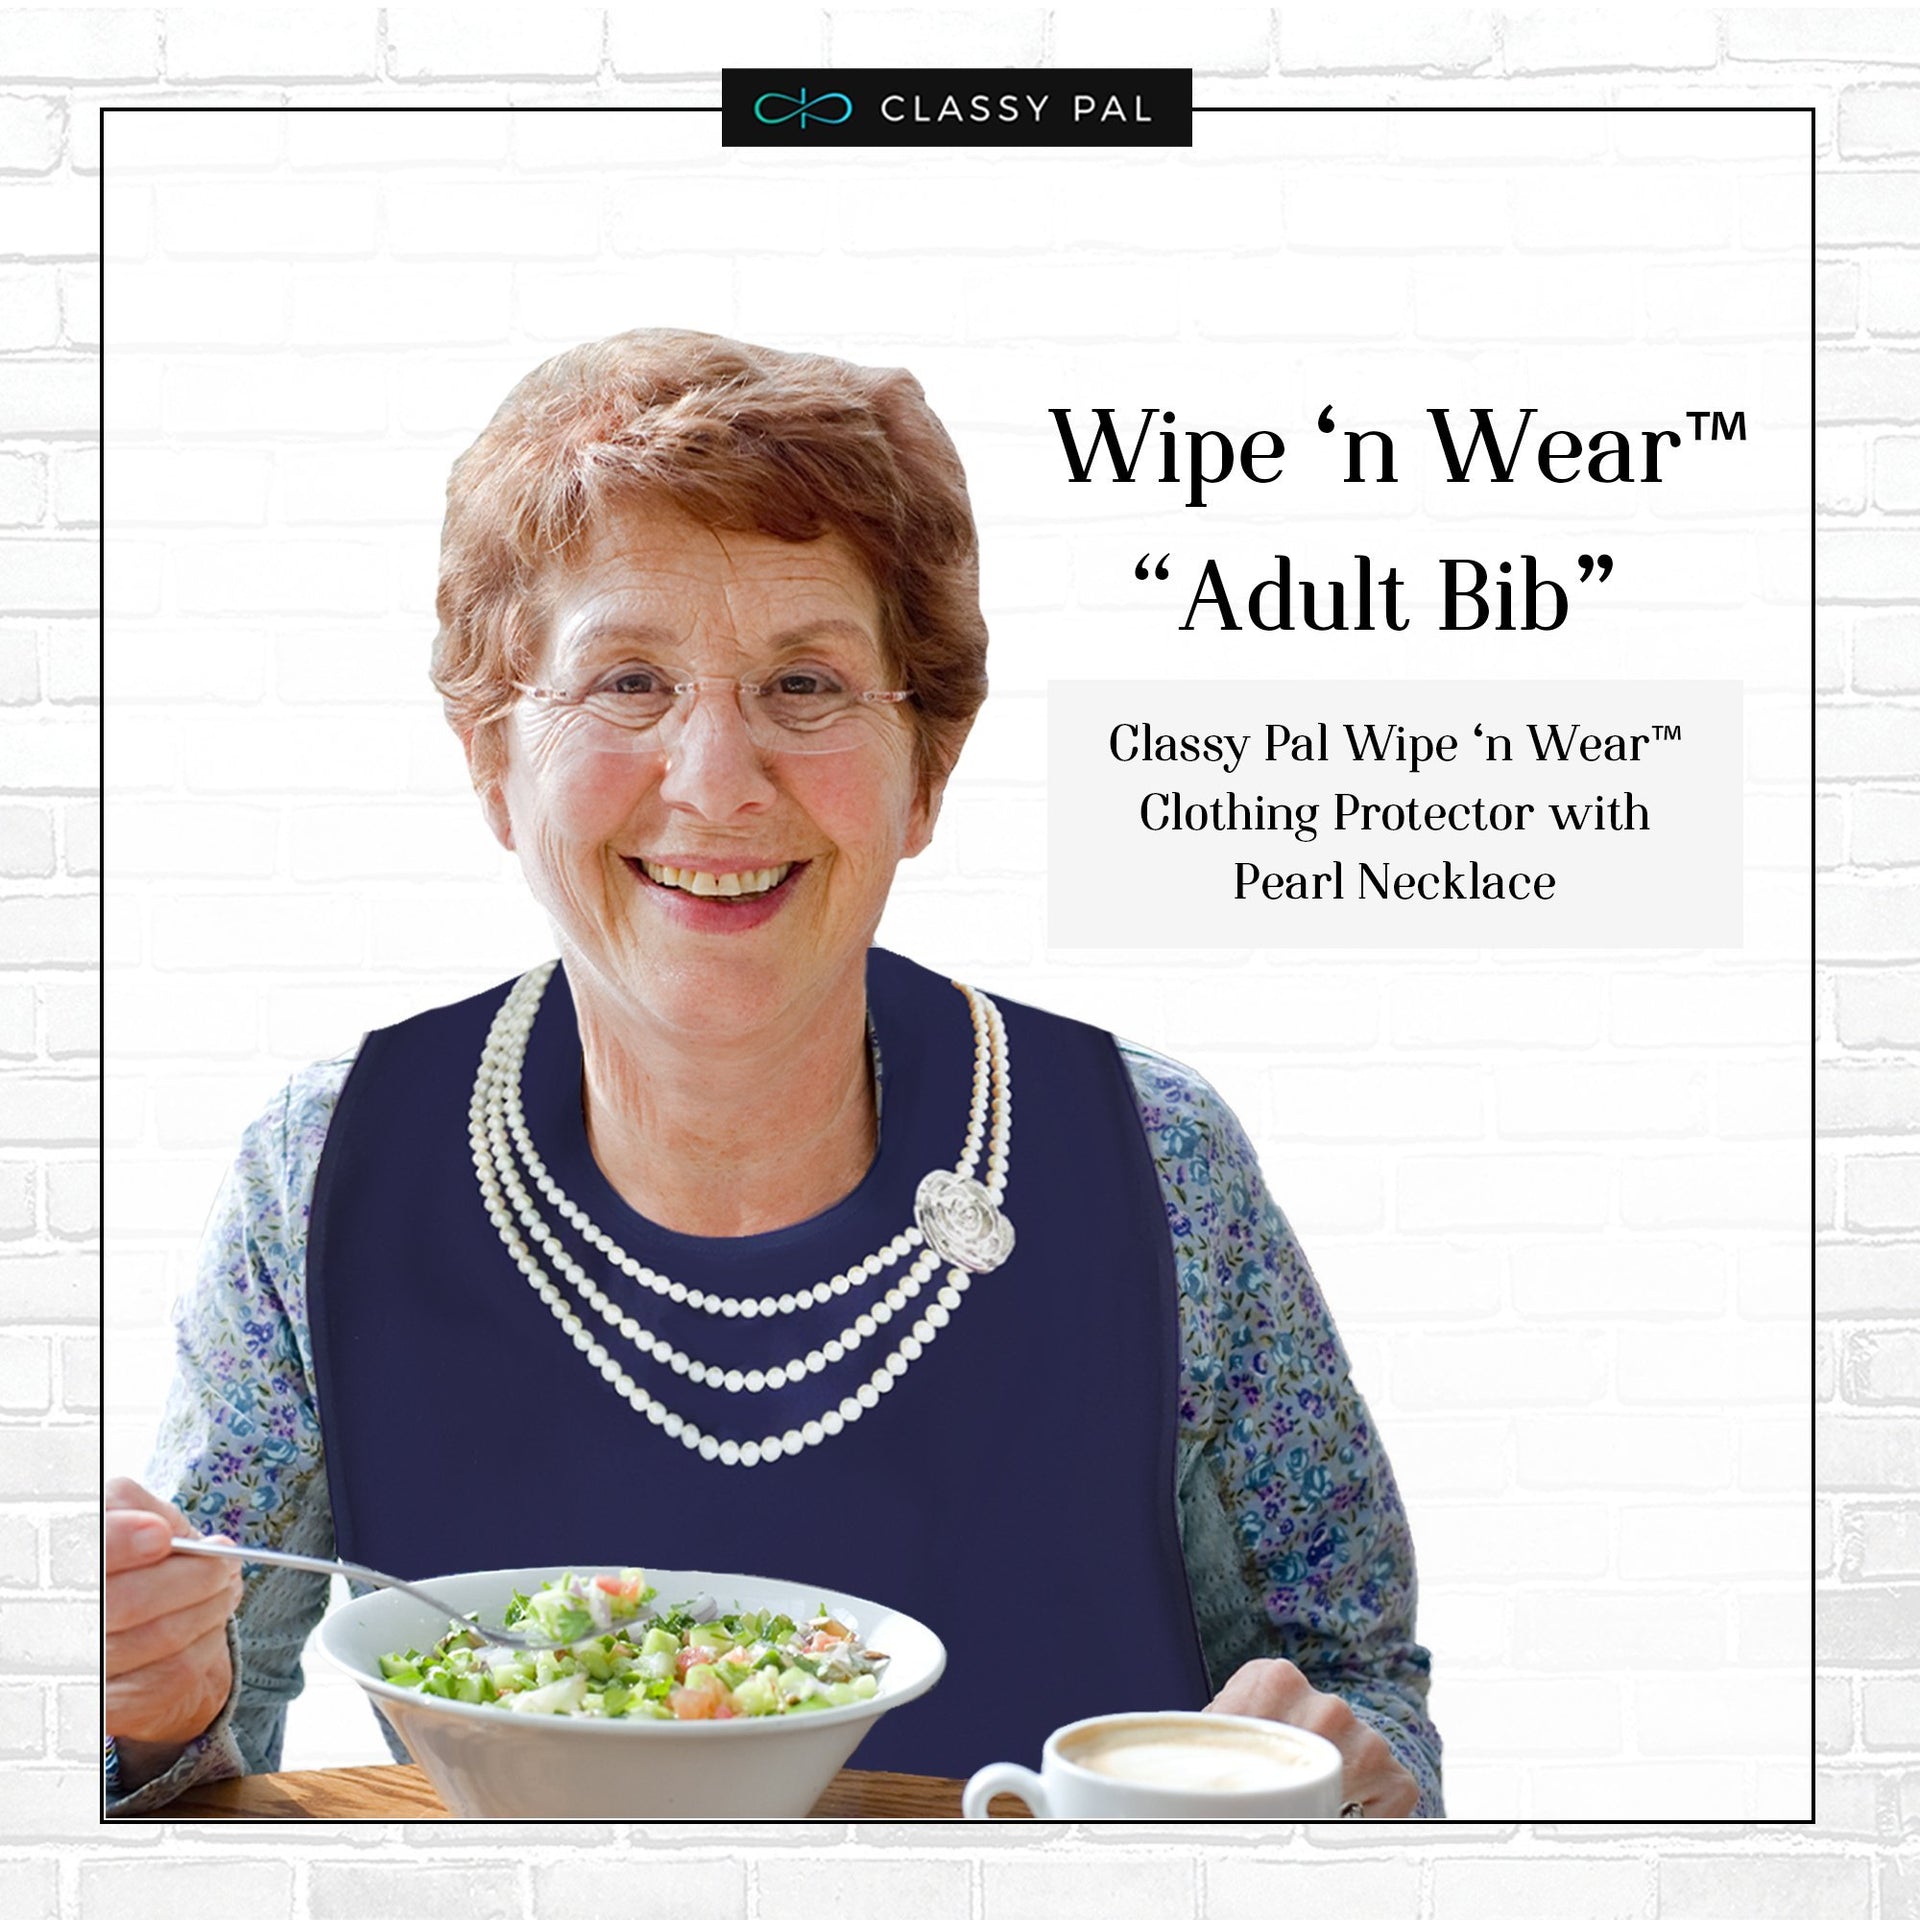 Women's Wipe 'n Wear™ Adult Bib Pearls (1 Pack) - Classy Pal Wipe 'n Wear Adult Bibs